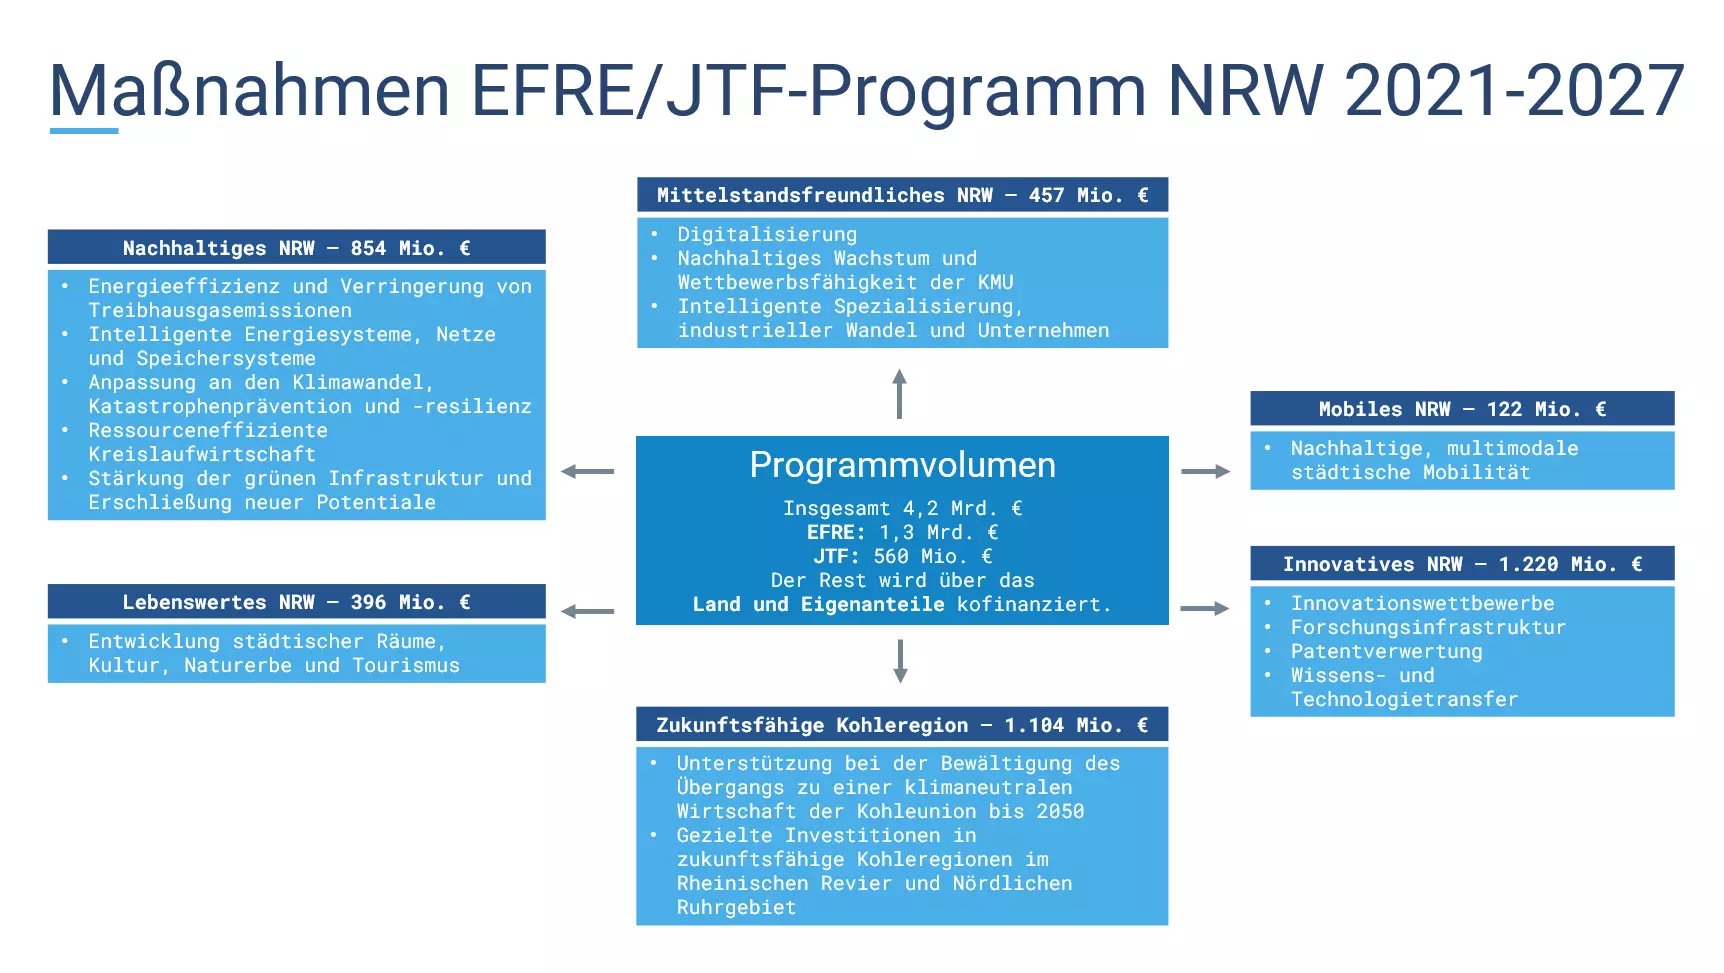 Übersicht der Maßnahmen im EFRE/JTF-Programm NRW 2021-2027